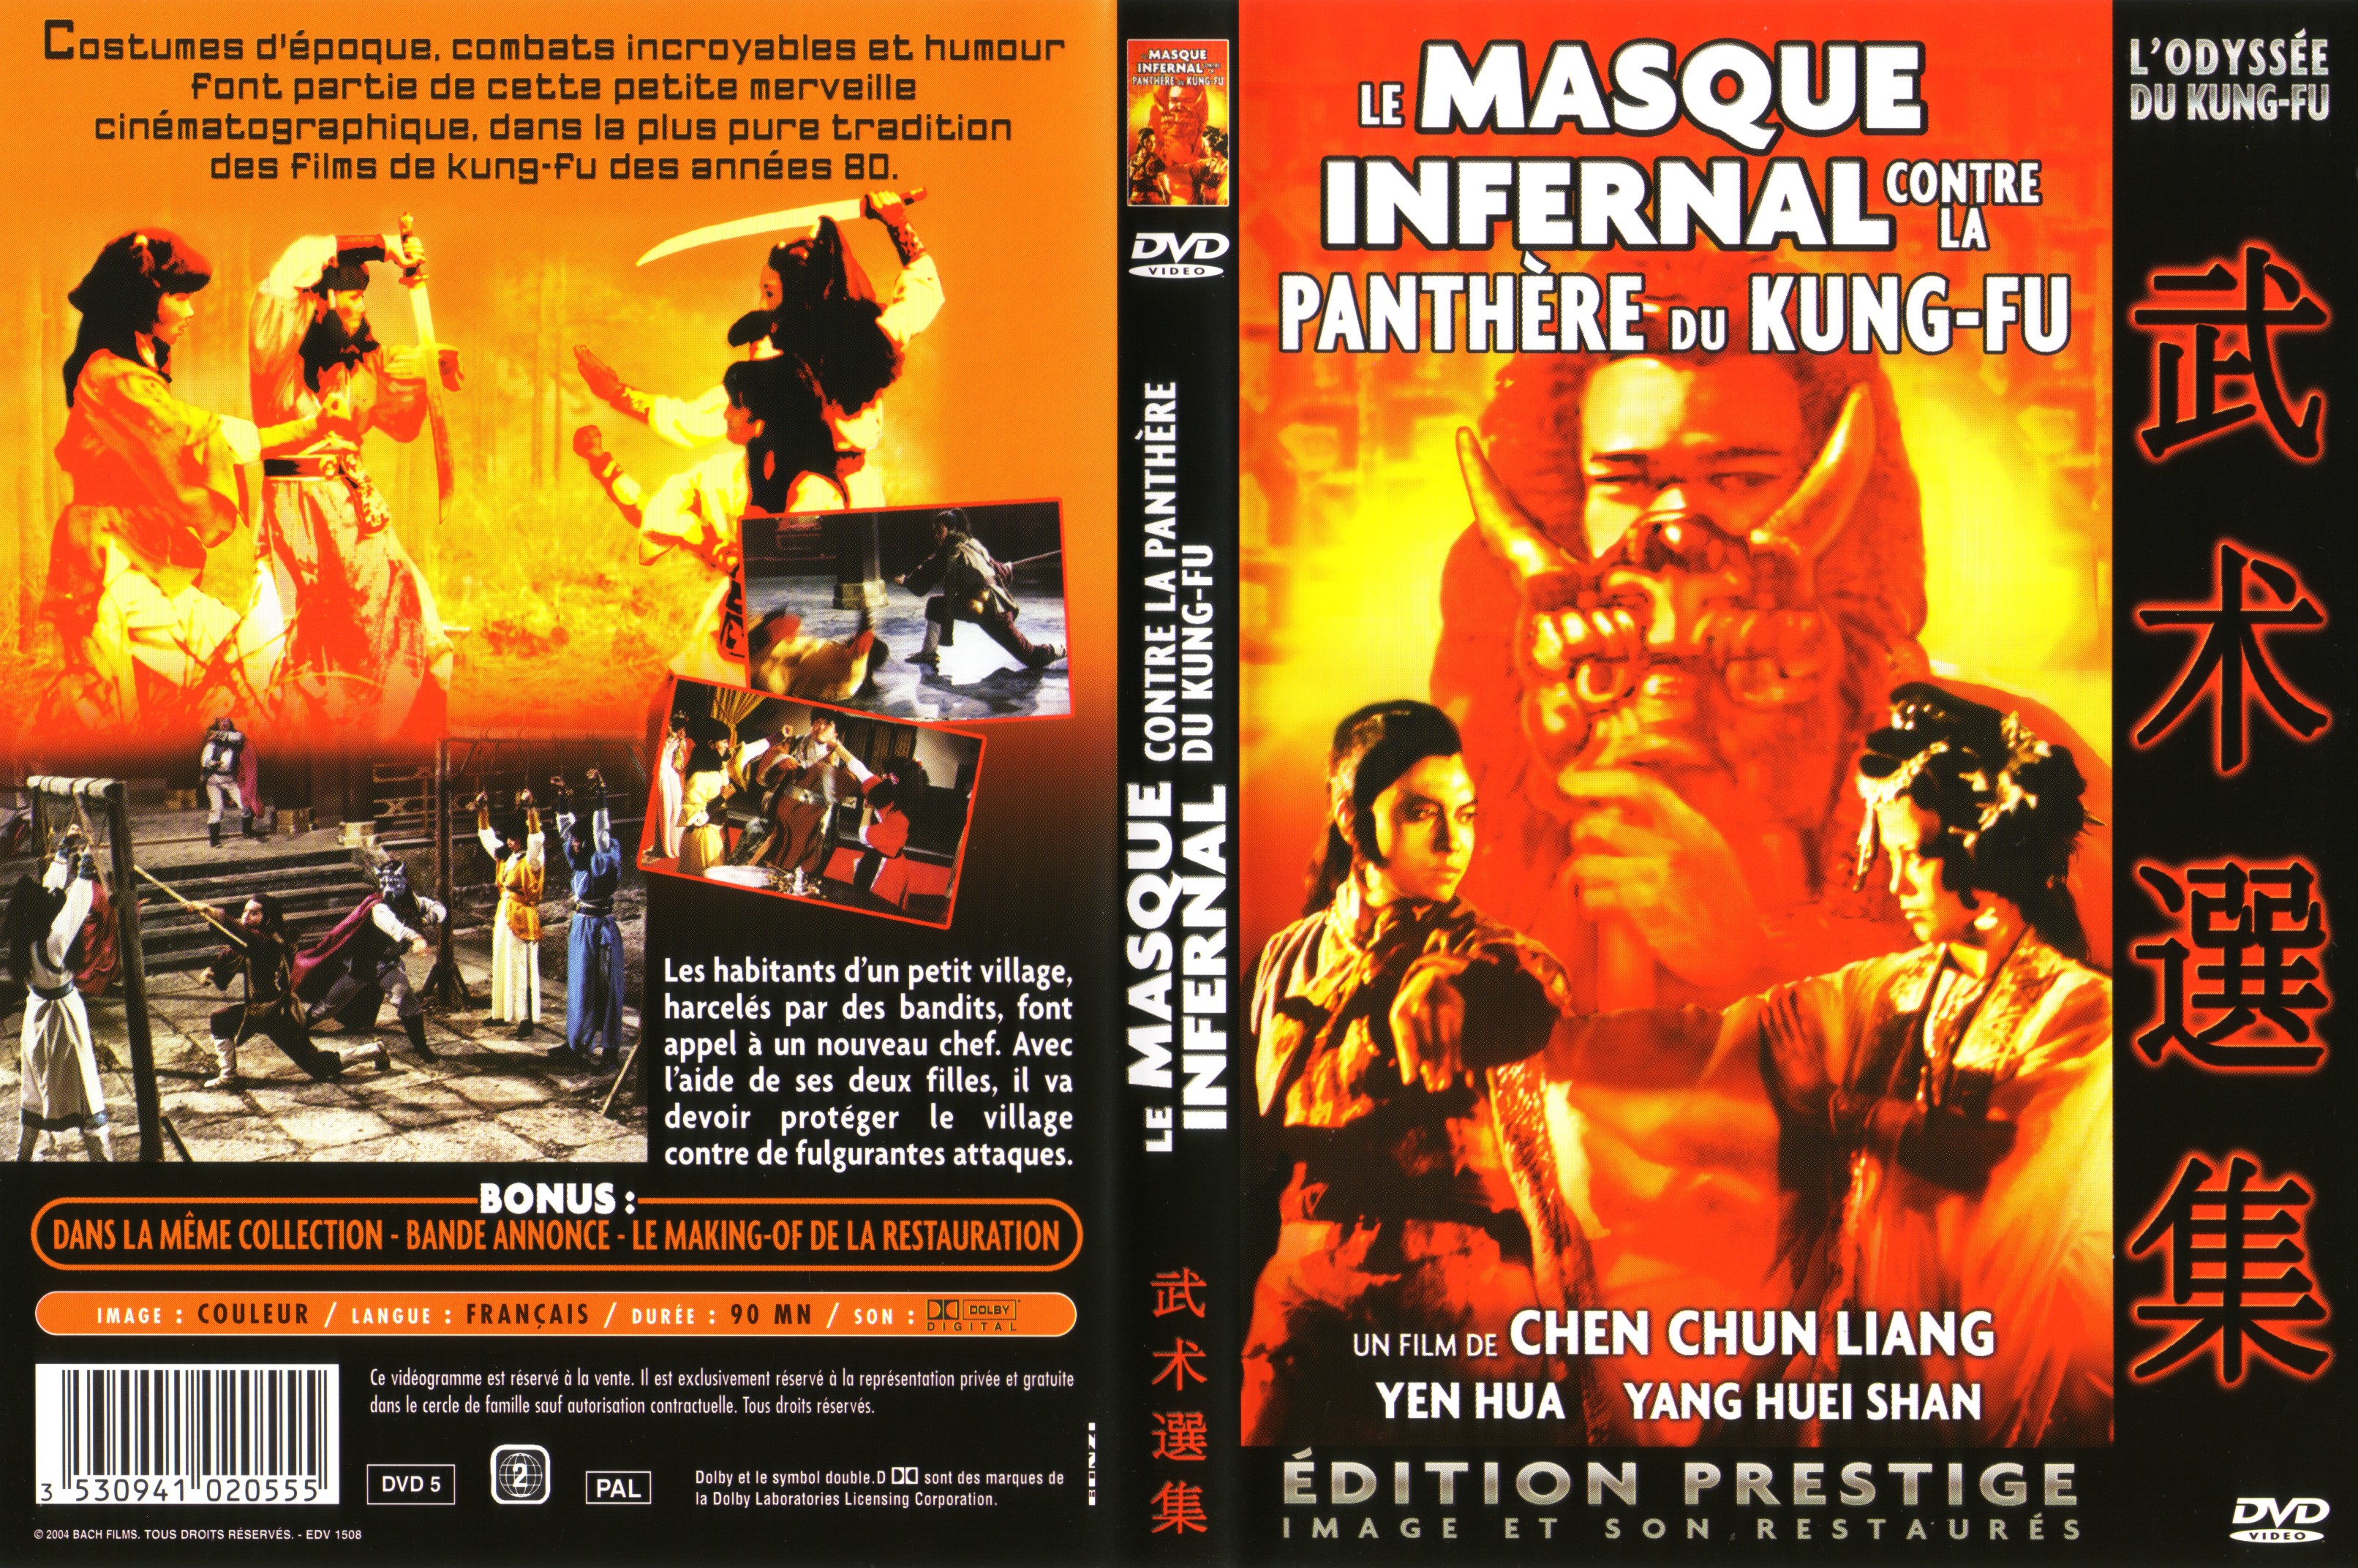 Jaquette DVD Le masque infernal contre la panthre du kung-fu